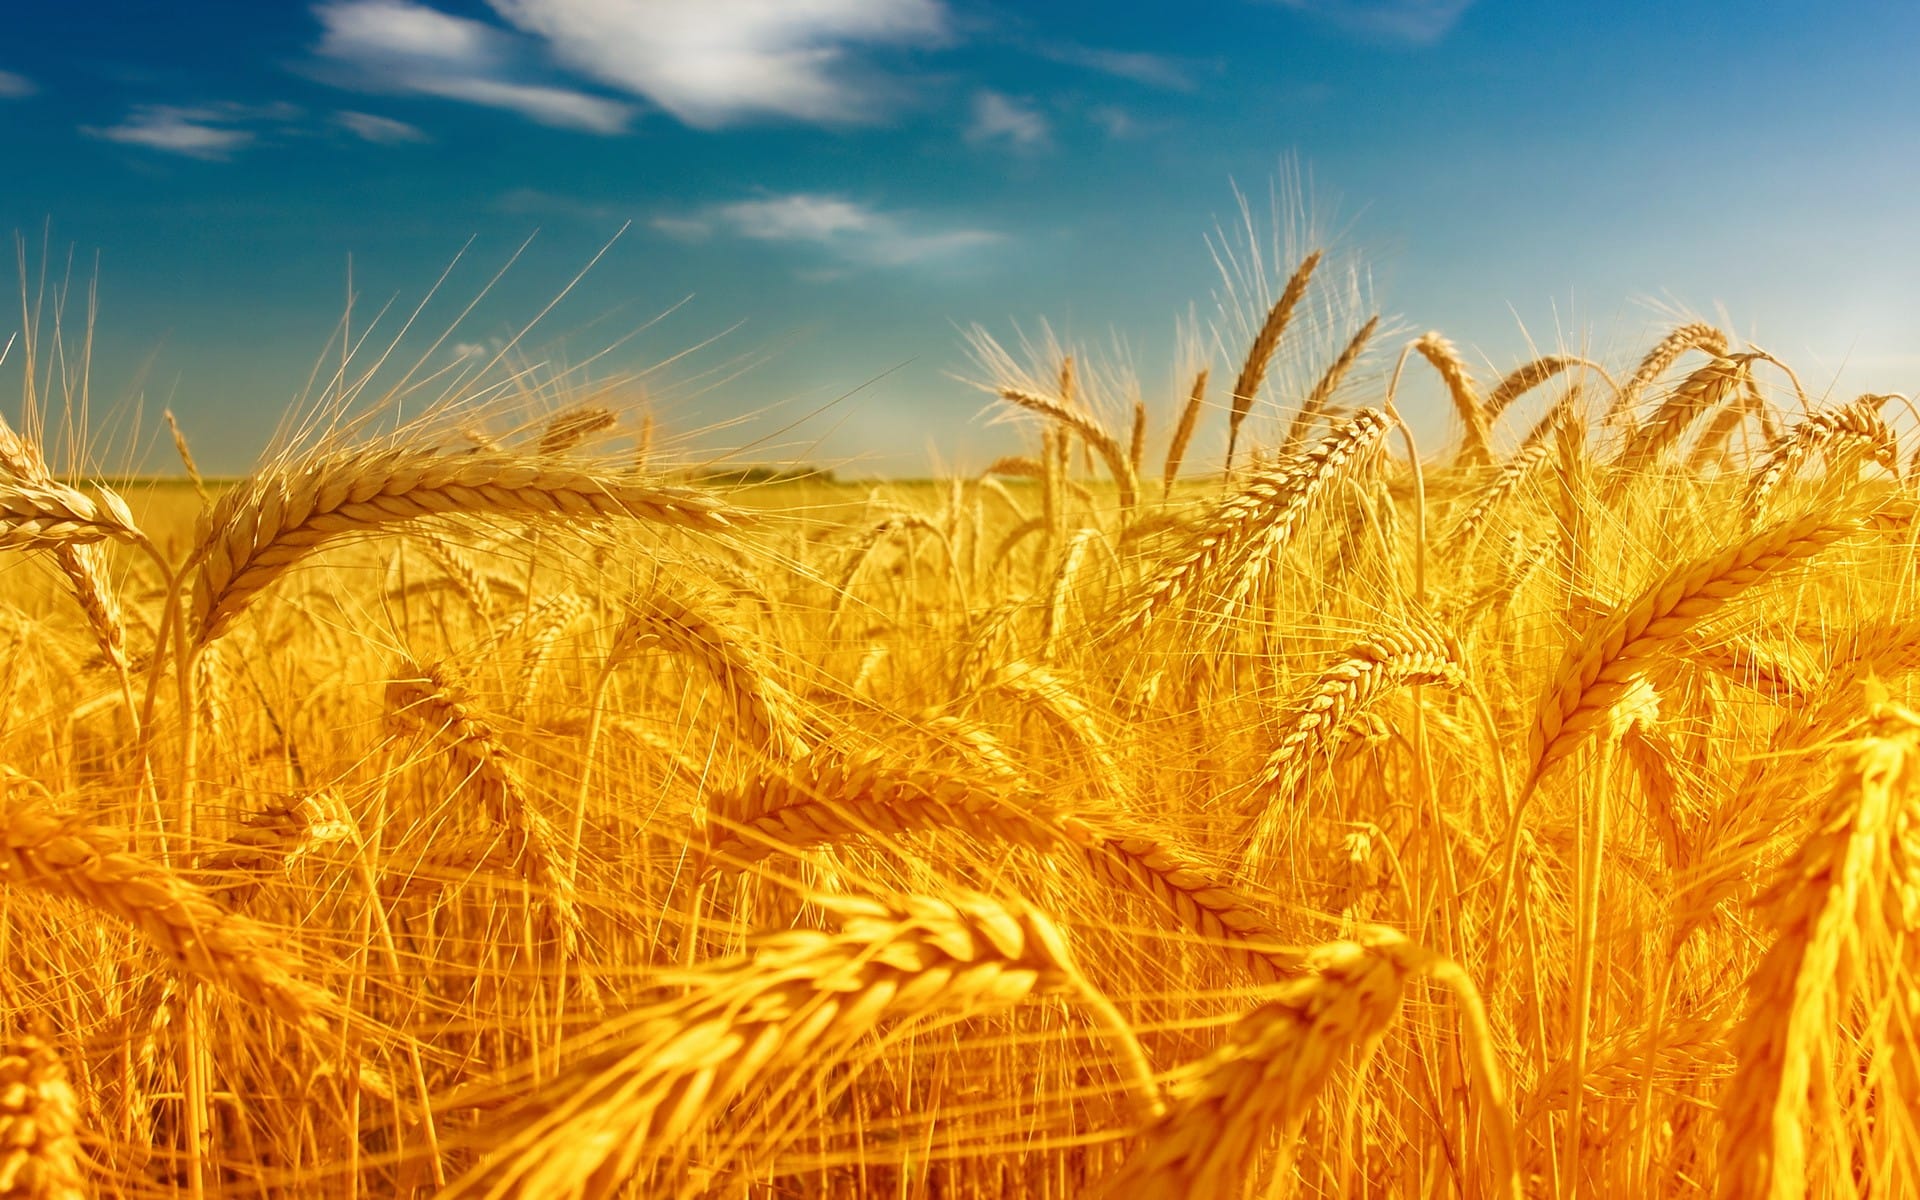 金黄色的小麦唯美风景图片壁纸